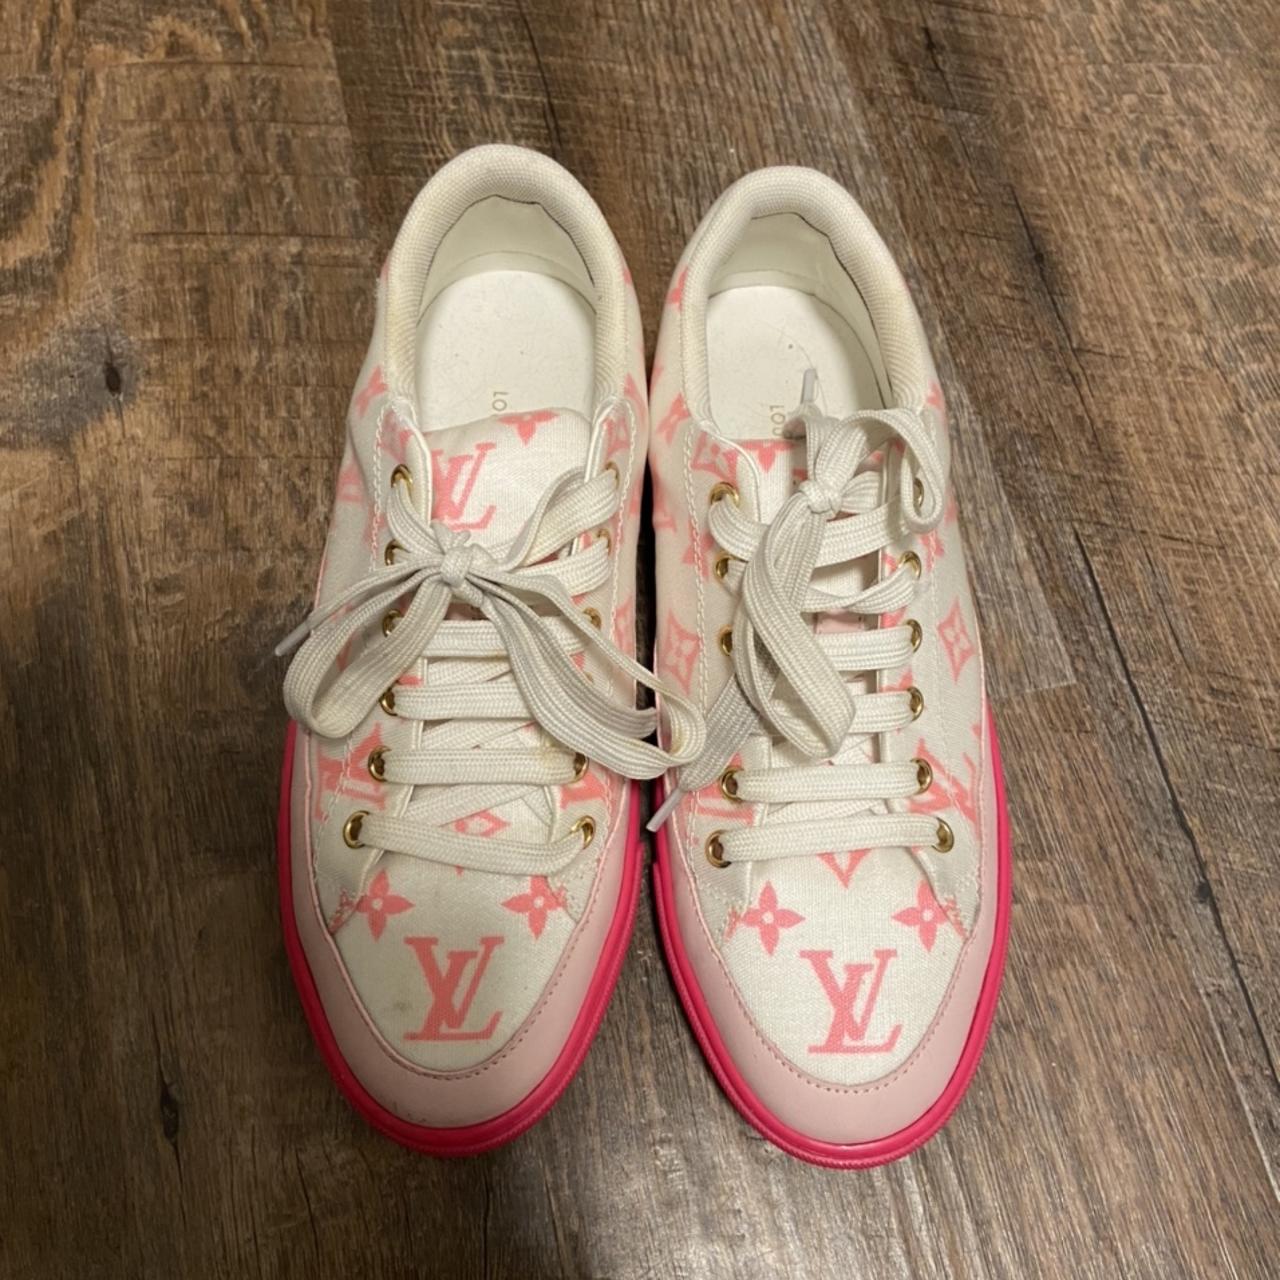 Louis Vuitton pink sneaker EU38 - Depop